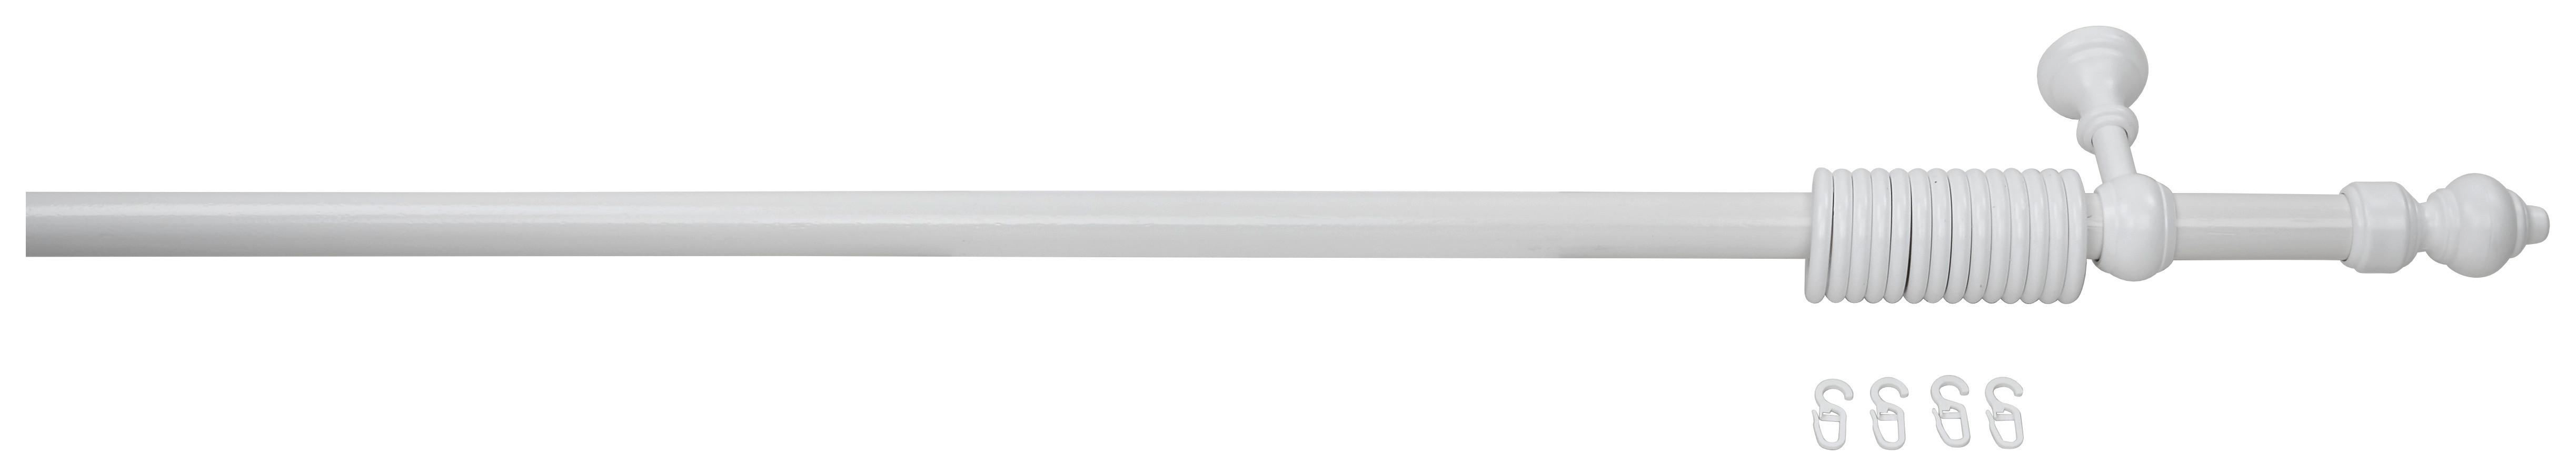 Rundstangengarnitur Benno Weiß L: 180 cm - Weiß, KONVENTIONELL, Kunststoff/Metall (180cm) - Ondega